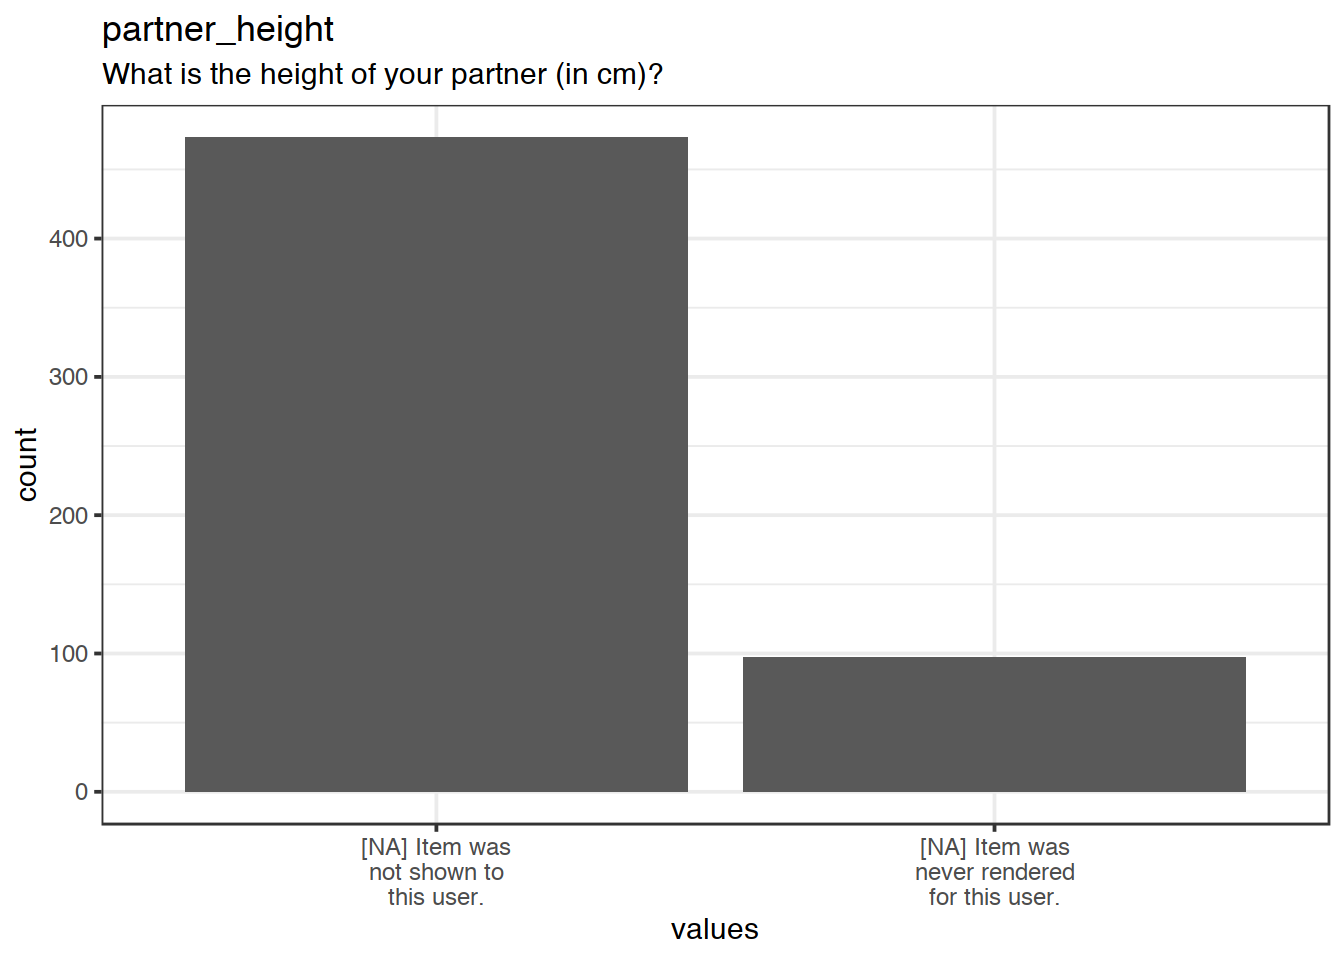 Plot of missing values for partner_height